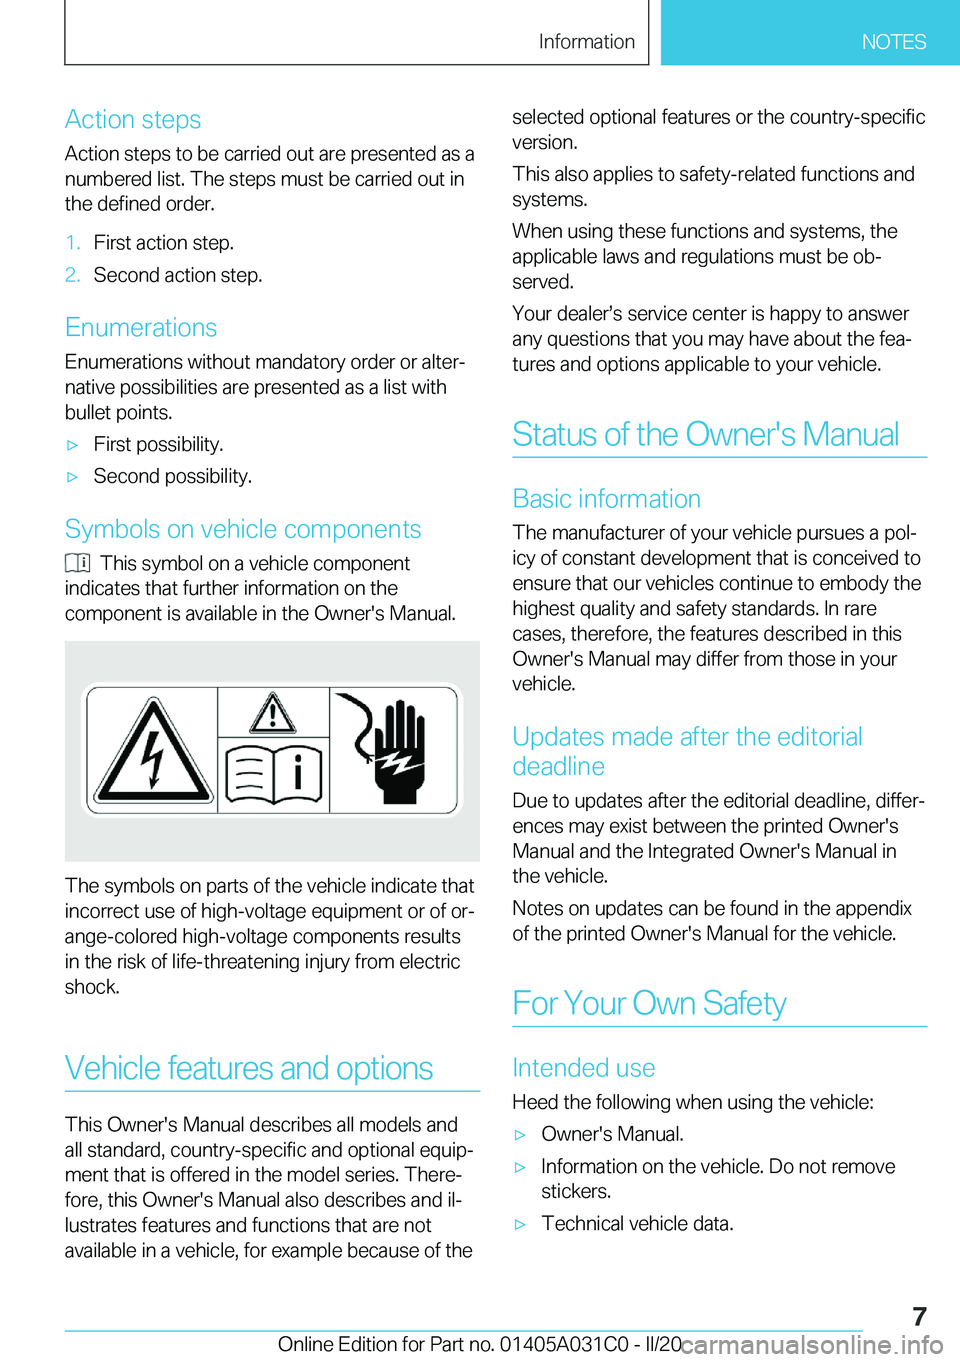 BMW I3 2020  Owners Manual �A�c�t�i�o�n��s�t�e�p�s
�A�c�t�i�o�n��s�t�e�p�s��t�o��b�e��c�a�r�r�i�e�d��o�u�t��a�r�e��p�r�e�s�e�n�t�e�d��a�s��a
�n�u�m�b�e�r�e�d��l�i�s�t�.��T�h�e��s�t�e�p�s��m�u�s�t��b�e��c�a�r�r�i